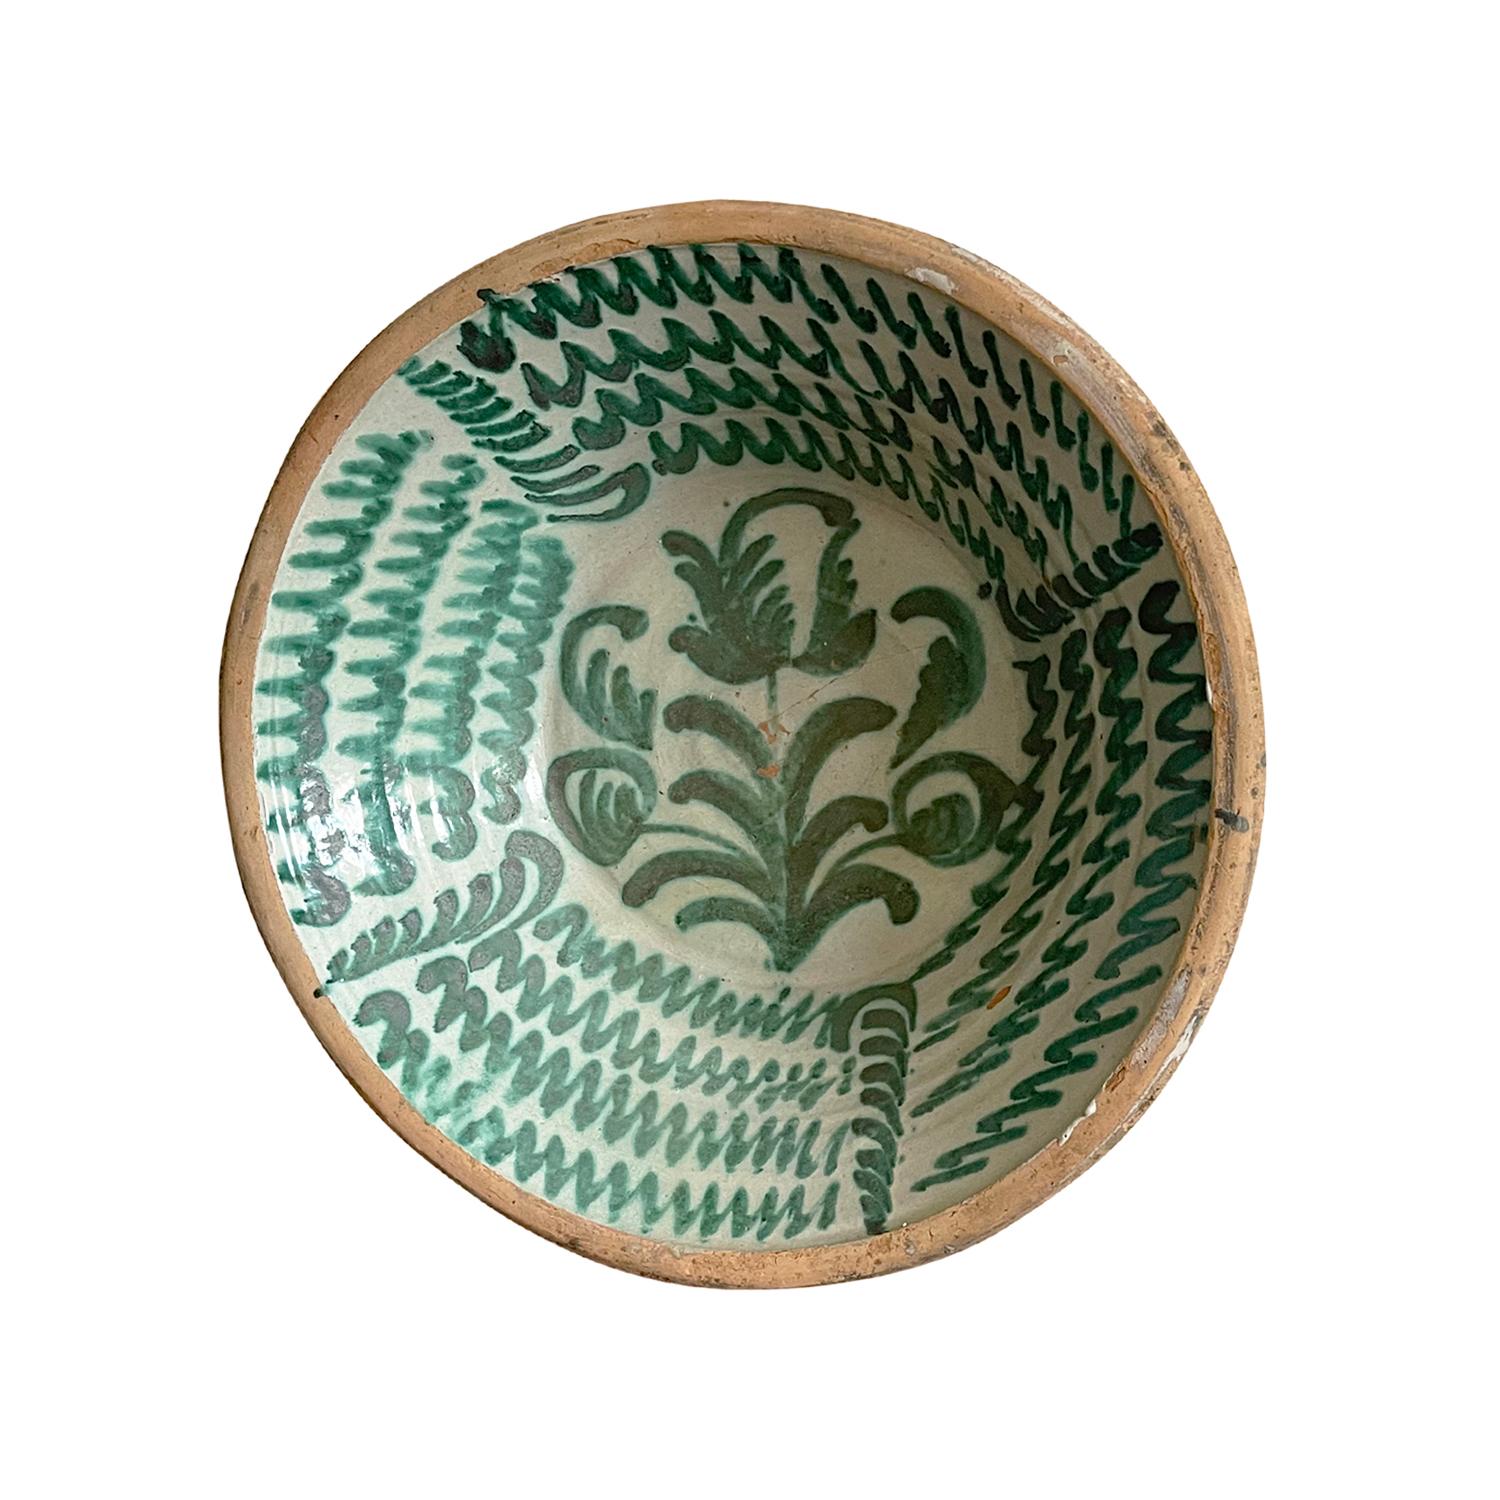 Eine große antike spanische Lebrillo-Mischschüssel aus handgefertigter Terrakotta aus Granada, Spanien. Mit einem Glasurdekor im typischen Morisco-Grün über einer milchweißen Glasur. Auf den Boden der Schale ist ein florales Motiv gemalt, das mit